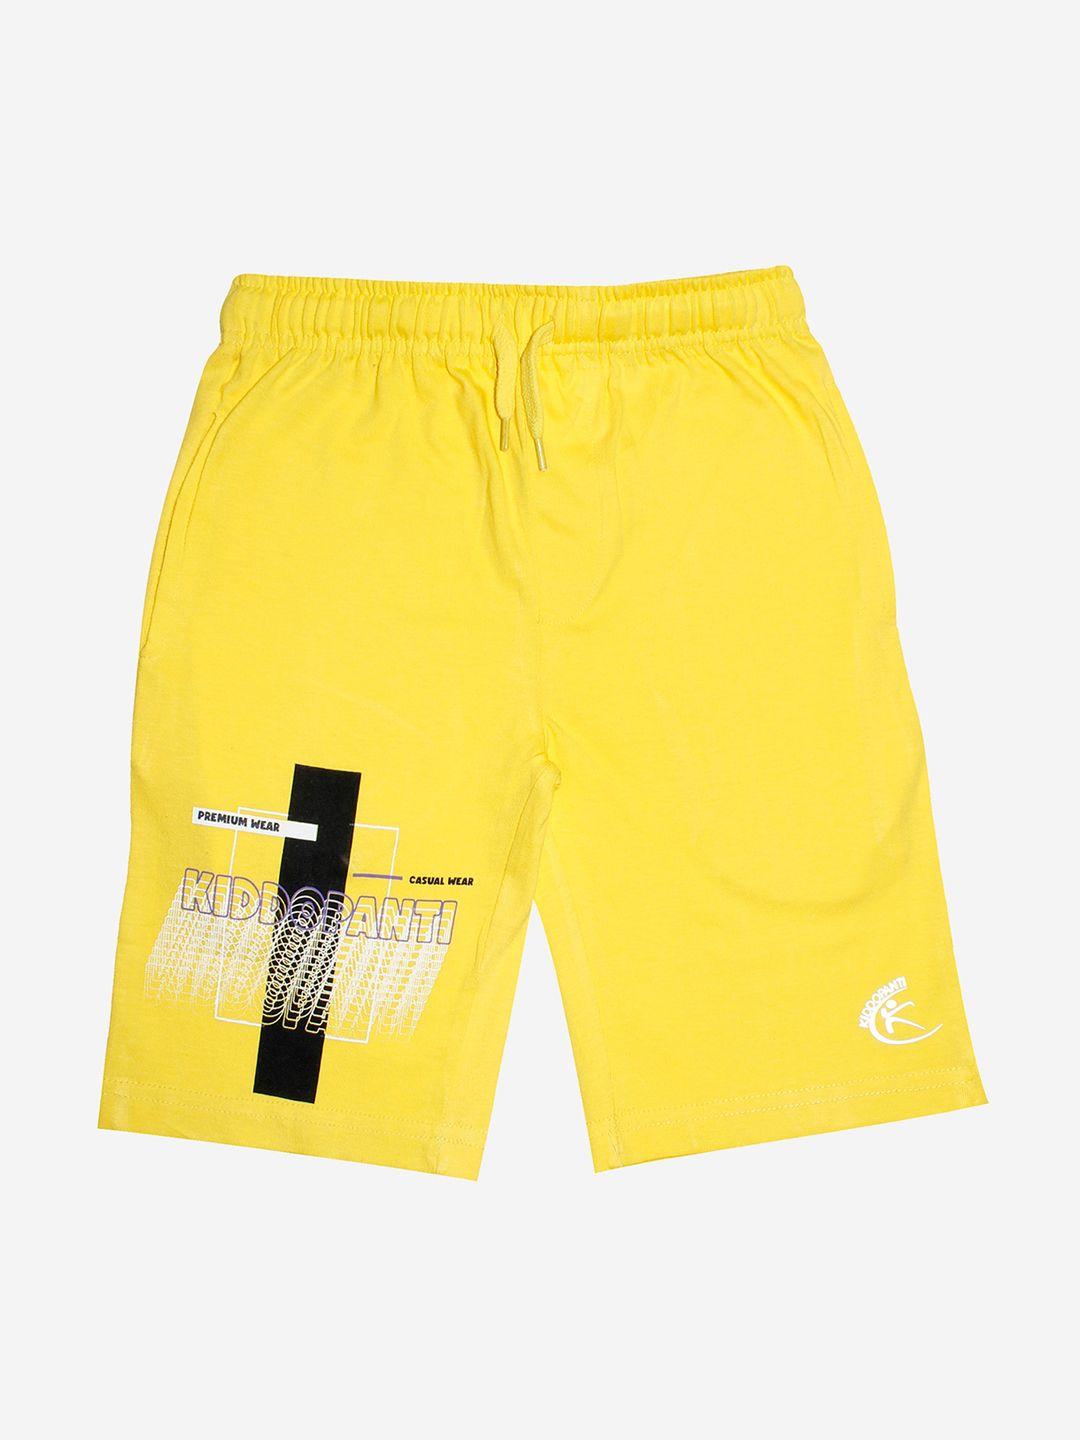 kiddopanti boys yellow sports pure cotton shorts